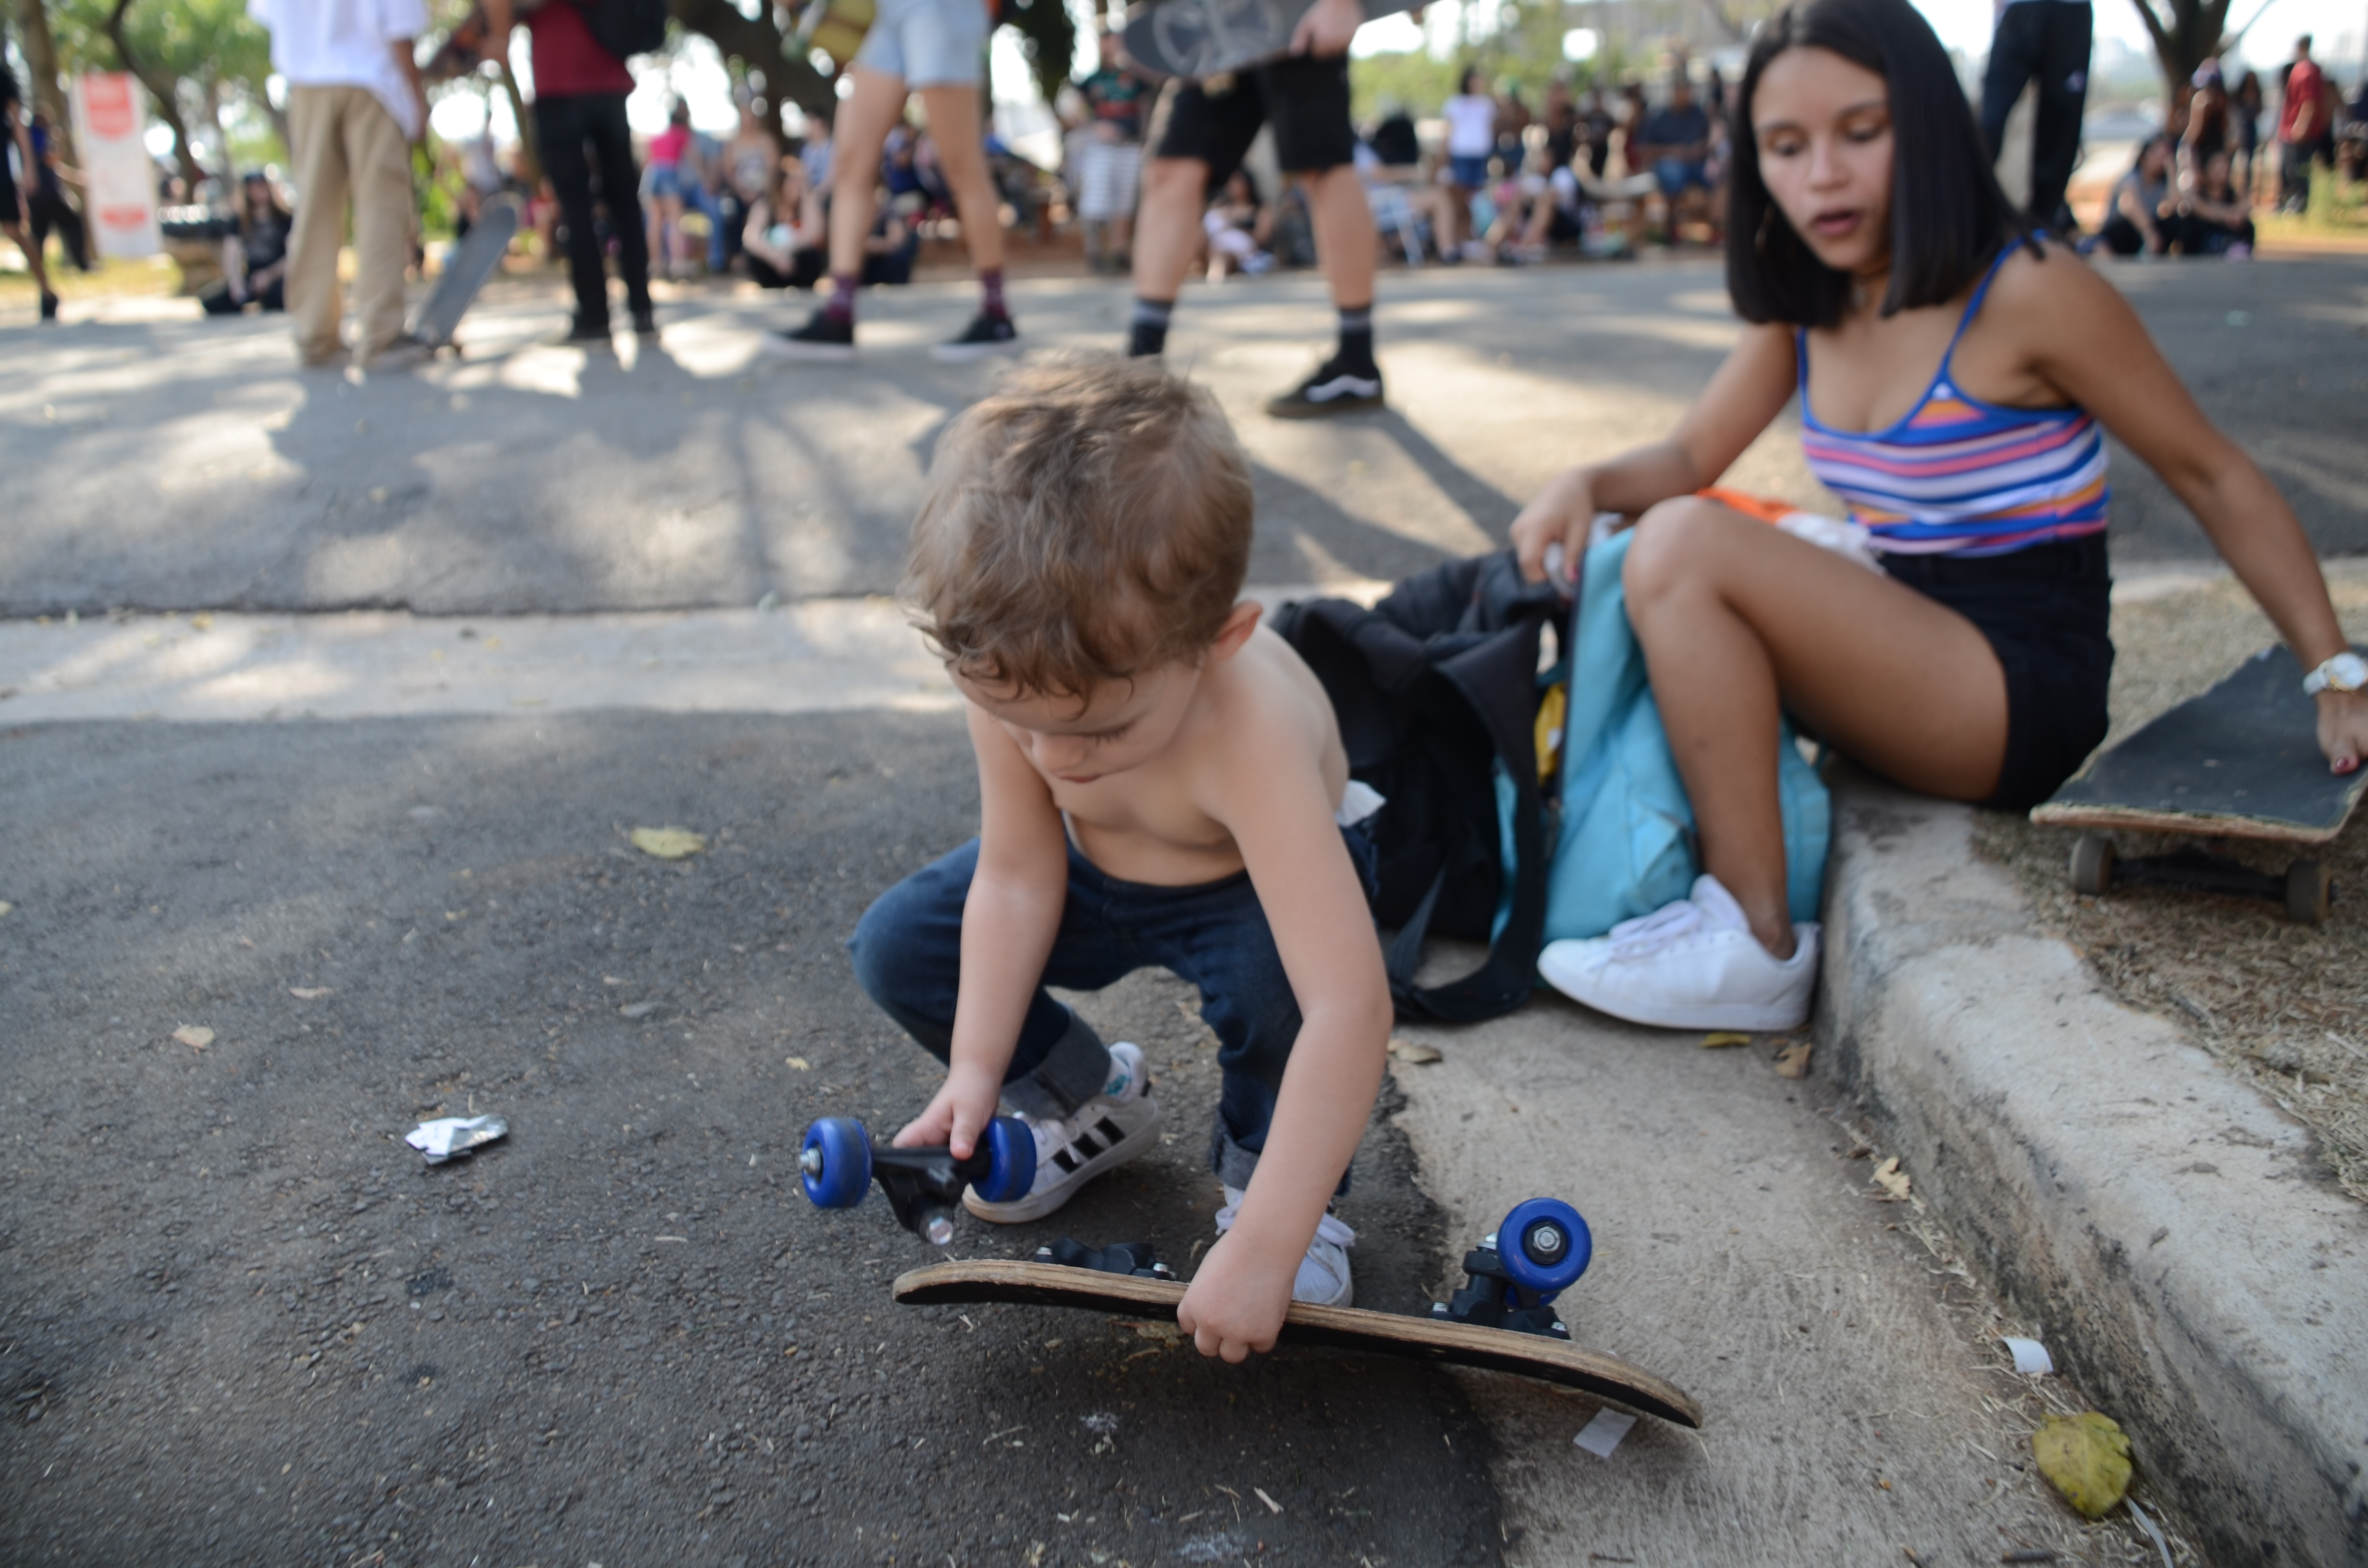 Criança brinca com peças de um skate, agachada no asfalto.